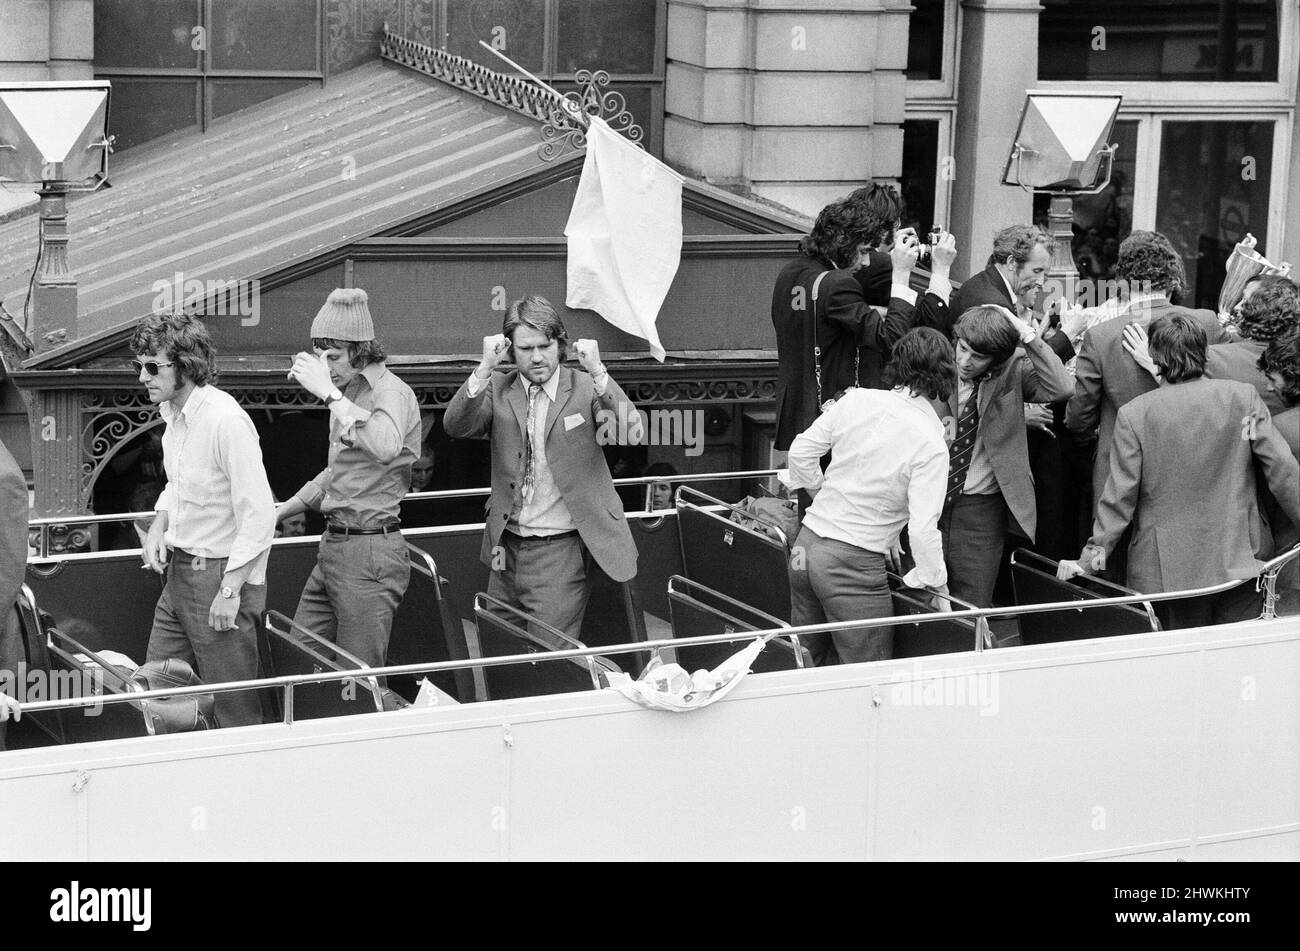 Ein triumpfender FC Chelsea, der nach dem Gewinn des Finals der Europapokal-Sieger 1971 im Jahr 2-1 gegen Real Madrid in Piräus, Griechenland, nach Hause zurückkehrt. Abgebildet während der Victory Parade, Fulham, London, 22.. Mai 1971. Stockfoto